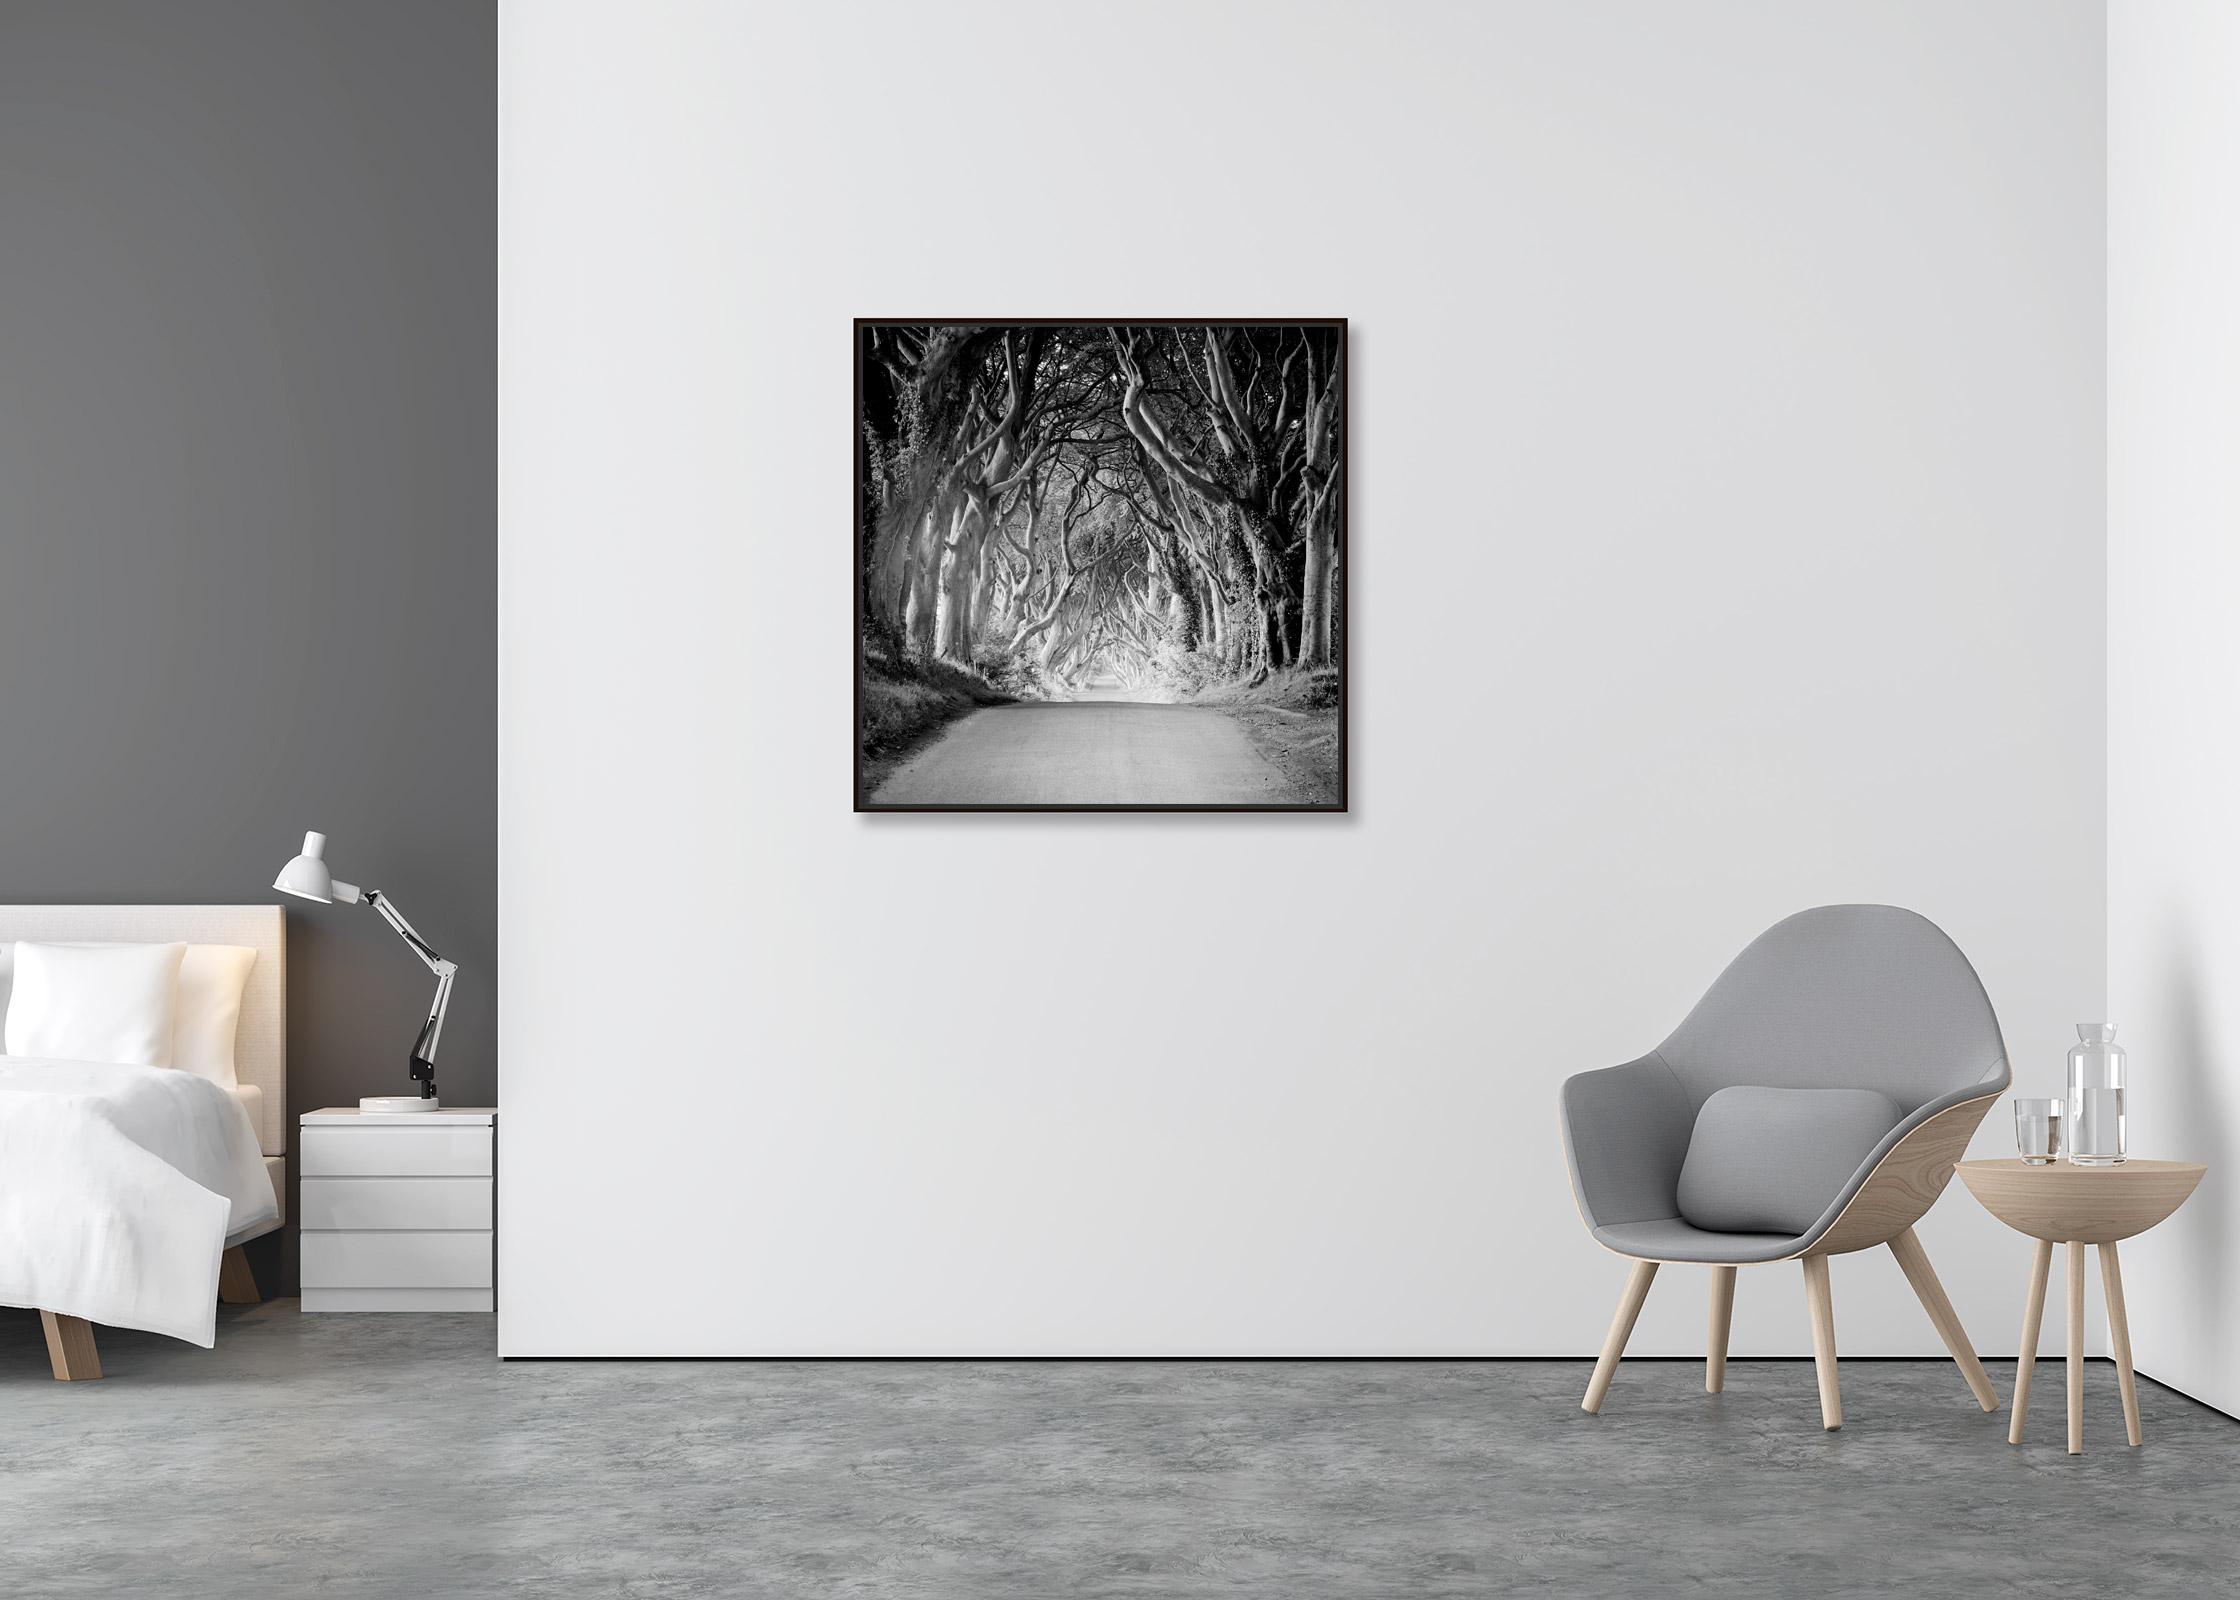 Dunkle Hecken, Irland, Buchenbaum-Avenue, Schwarz-Weiß-Landschaftsfotografie (Zeitgenössisch), Photograph, von Gerald Berghammer